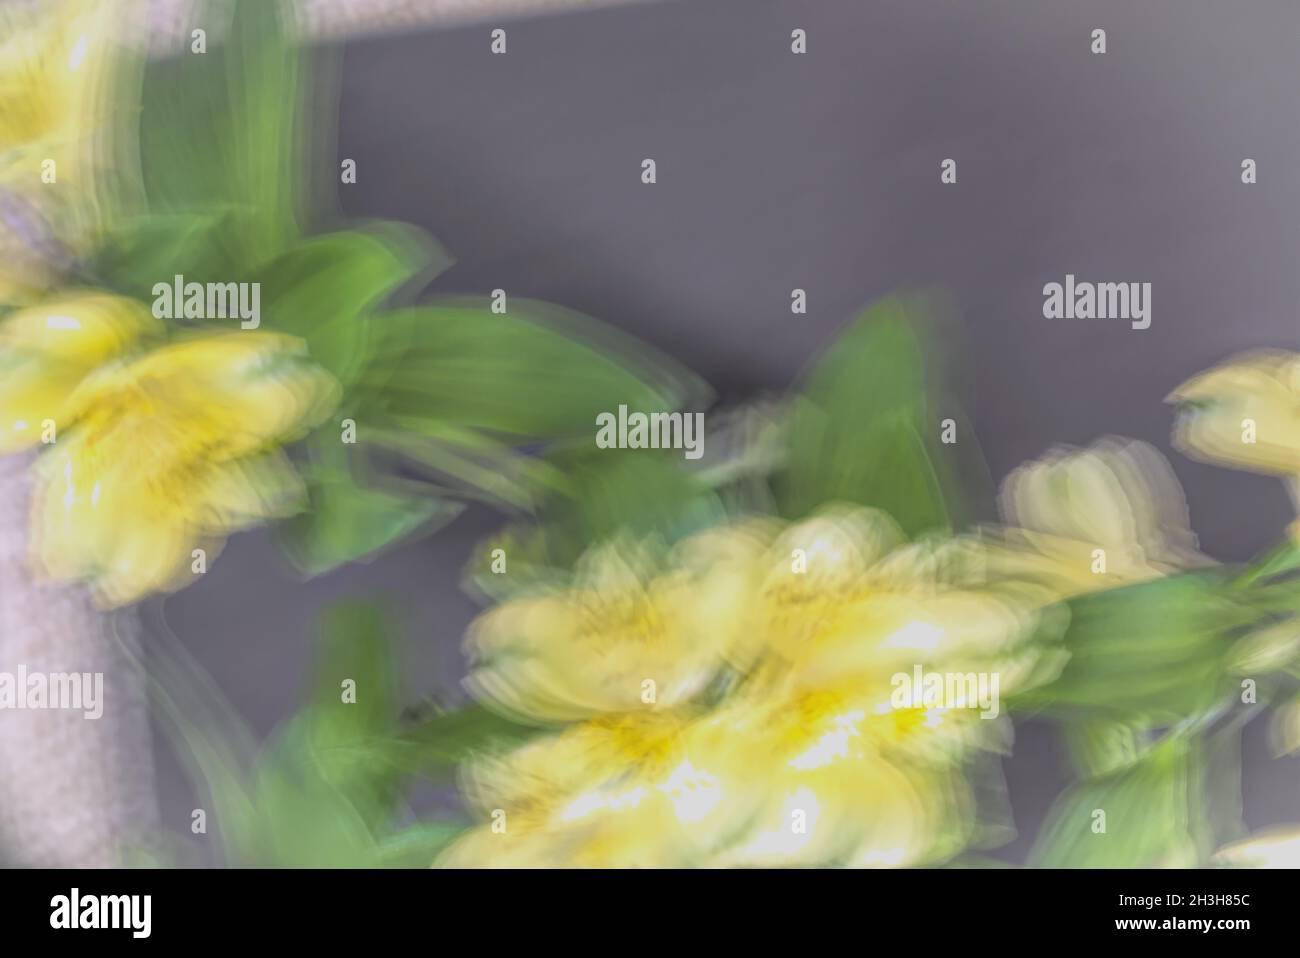 En el borde. ICM amarillo borroso Las flores de alstroemeria cubren el lado izquierdo e inferior del marco dejando un área oscura para el texto. Foto de stock